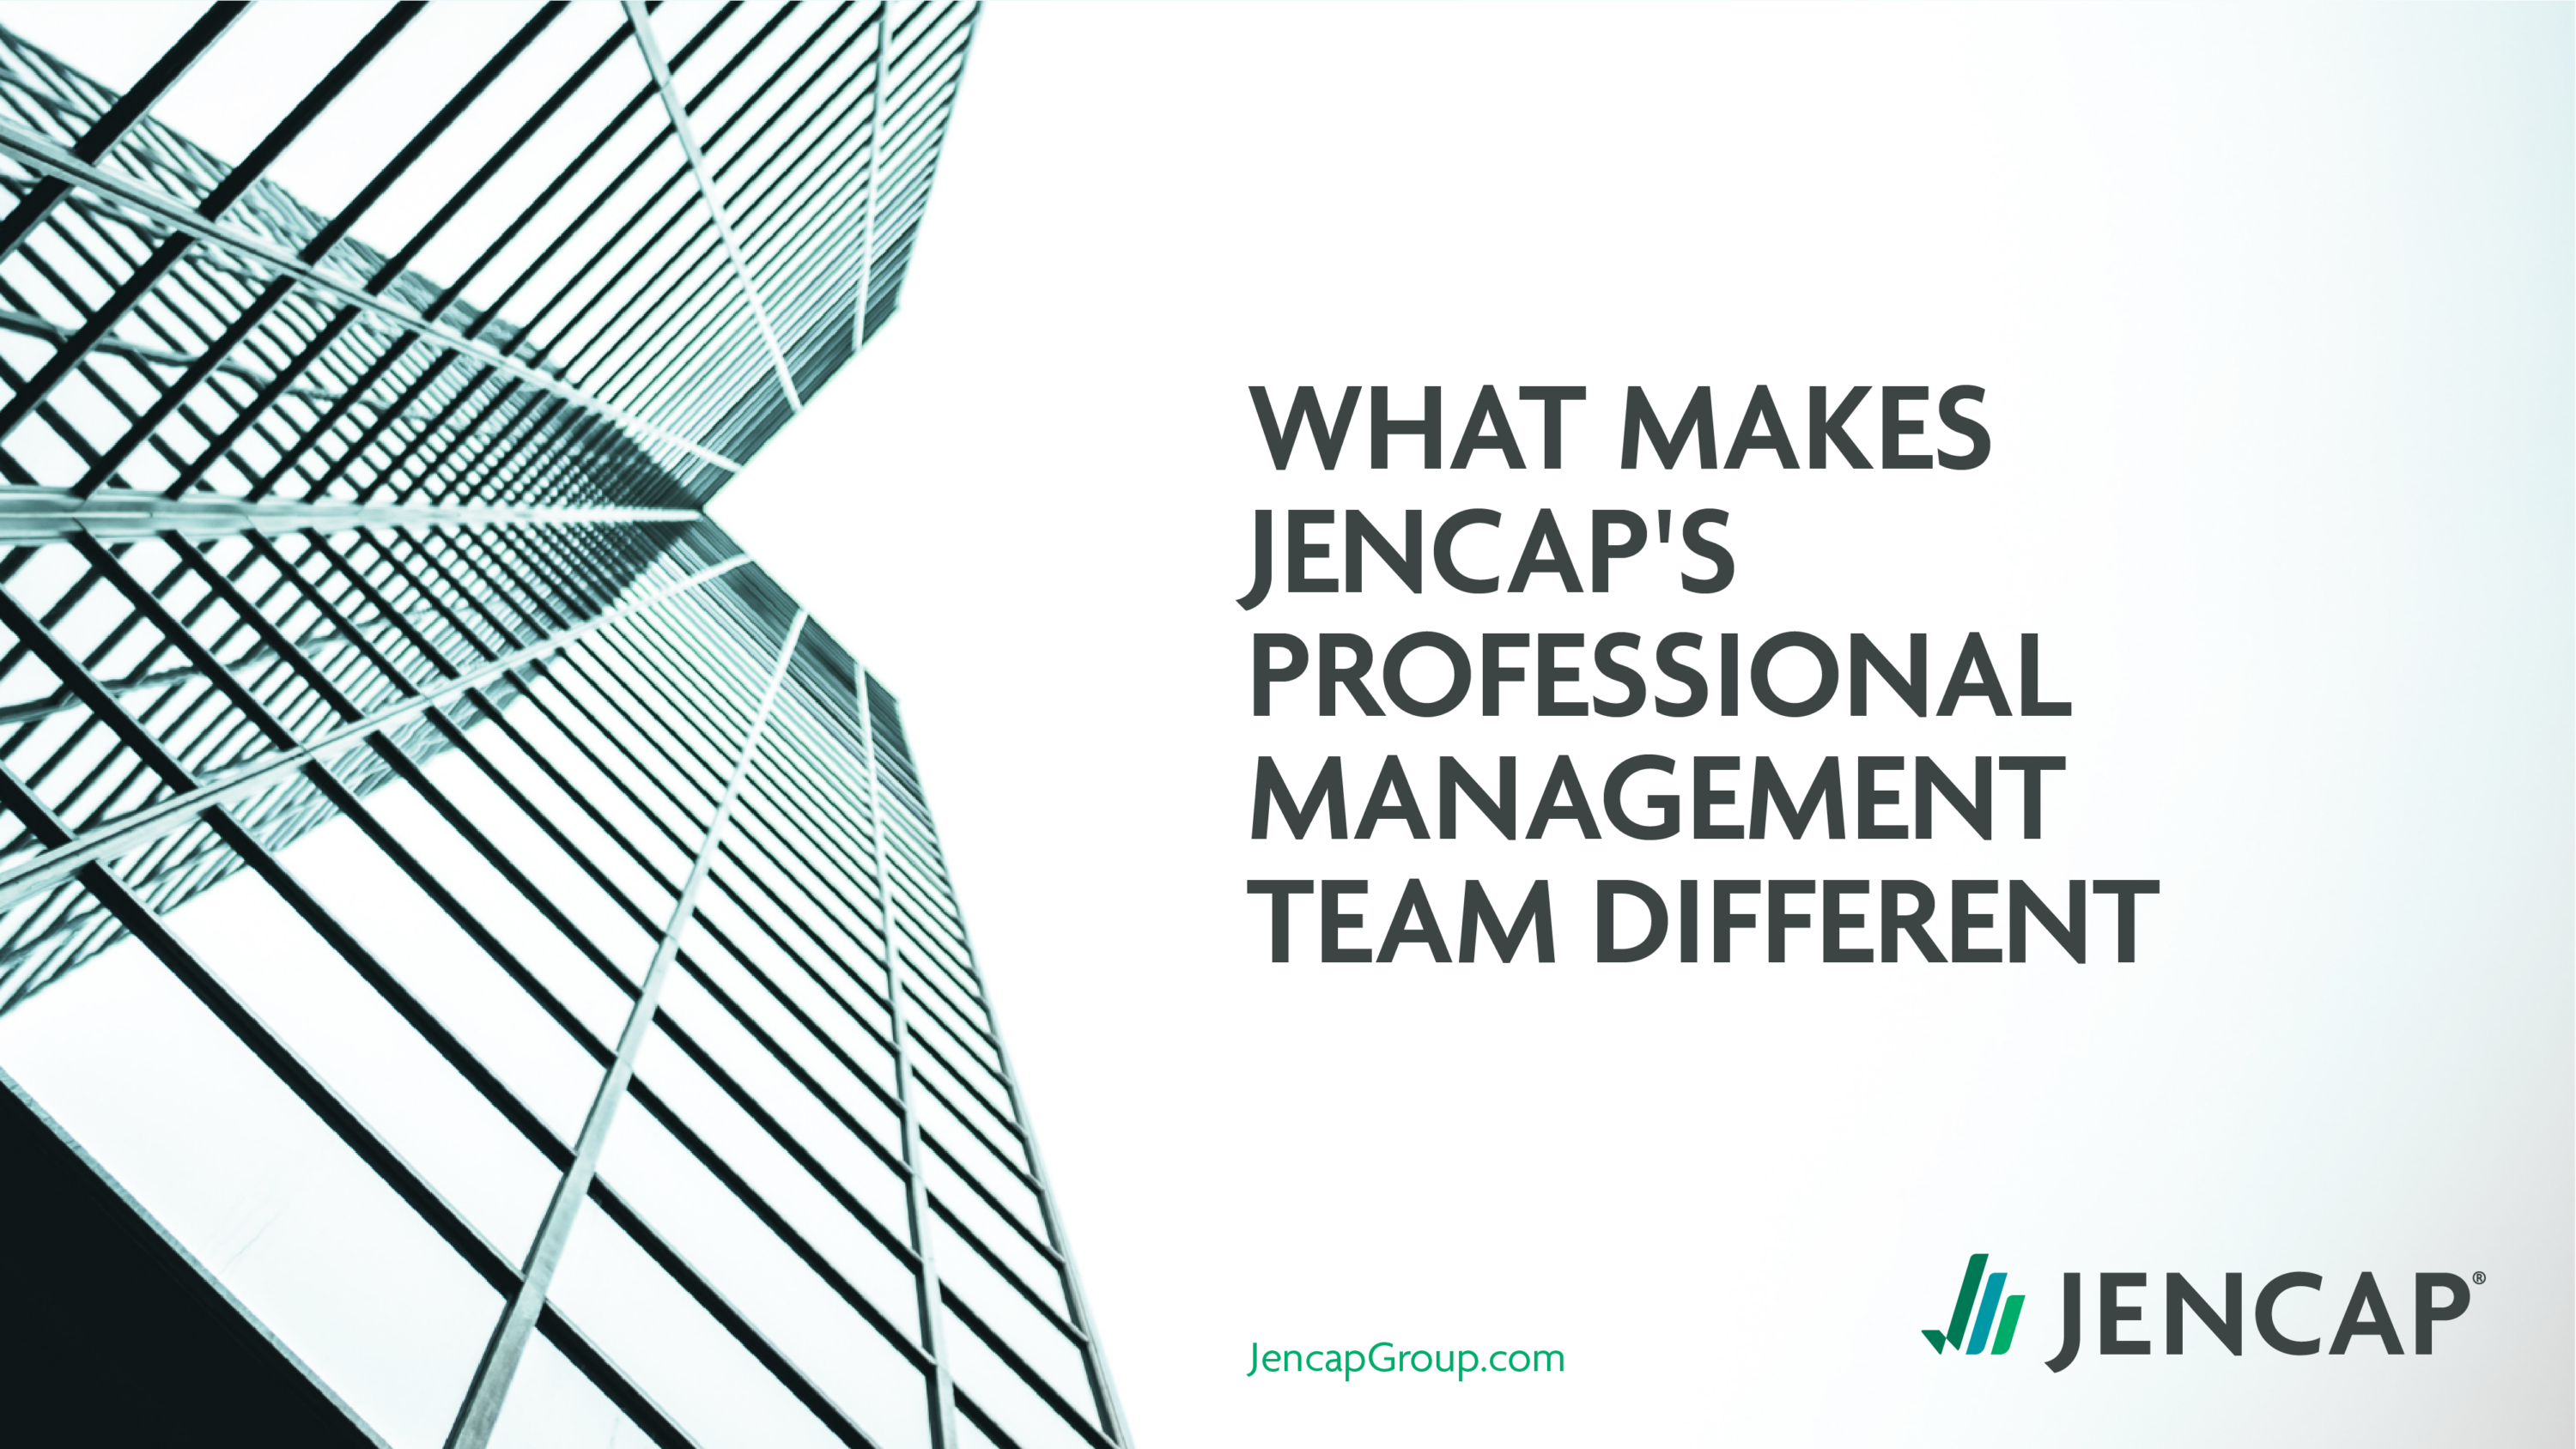 What makes Jencap's Professional Management Team Different